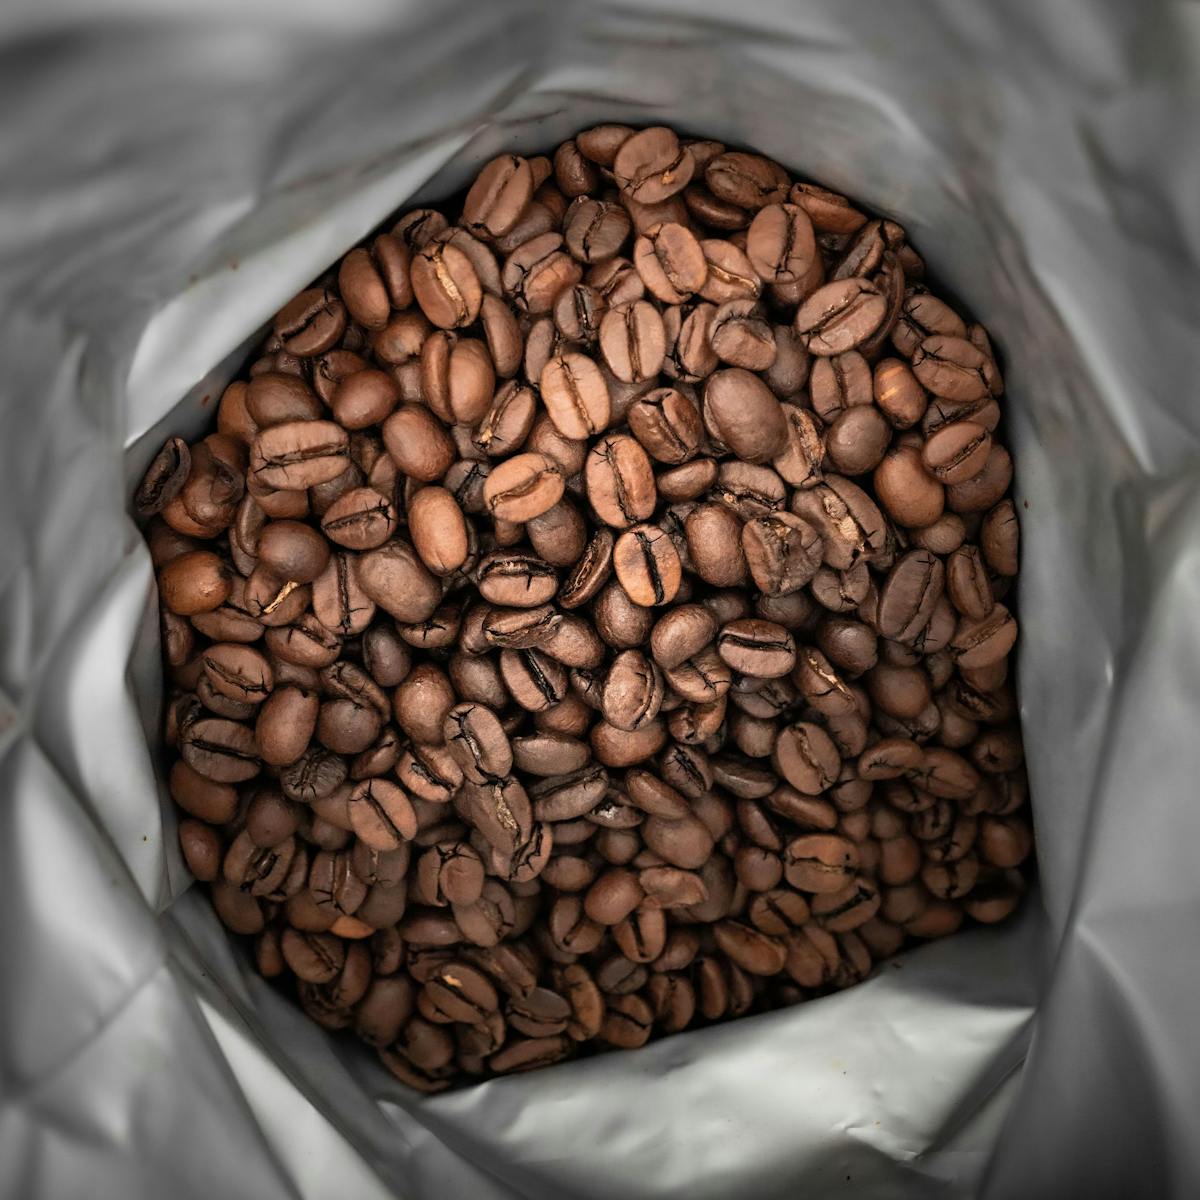 BELLADO | Zrnková káva "Pepper Coast" - 6x 1kg - 80% Arabica a 20% Robusta